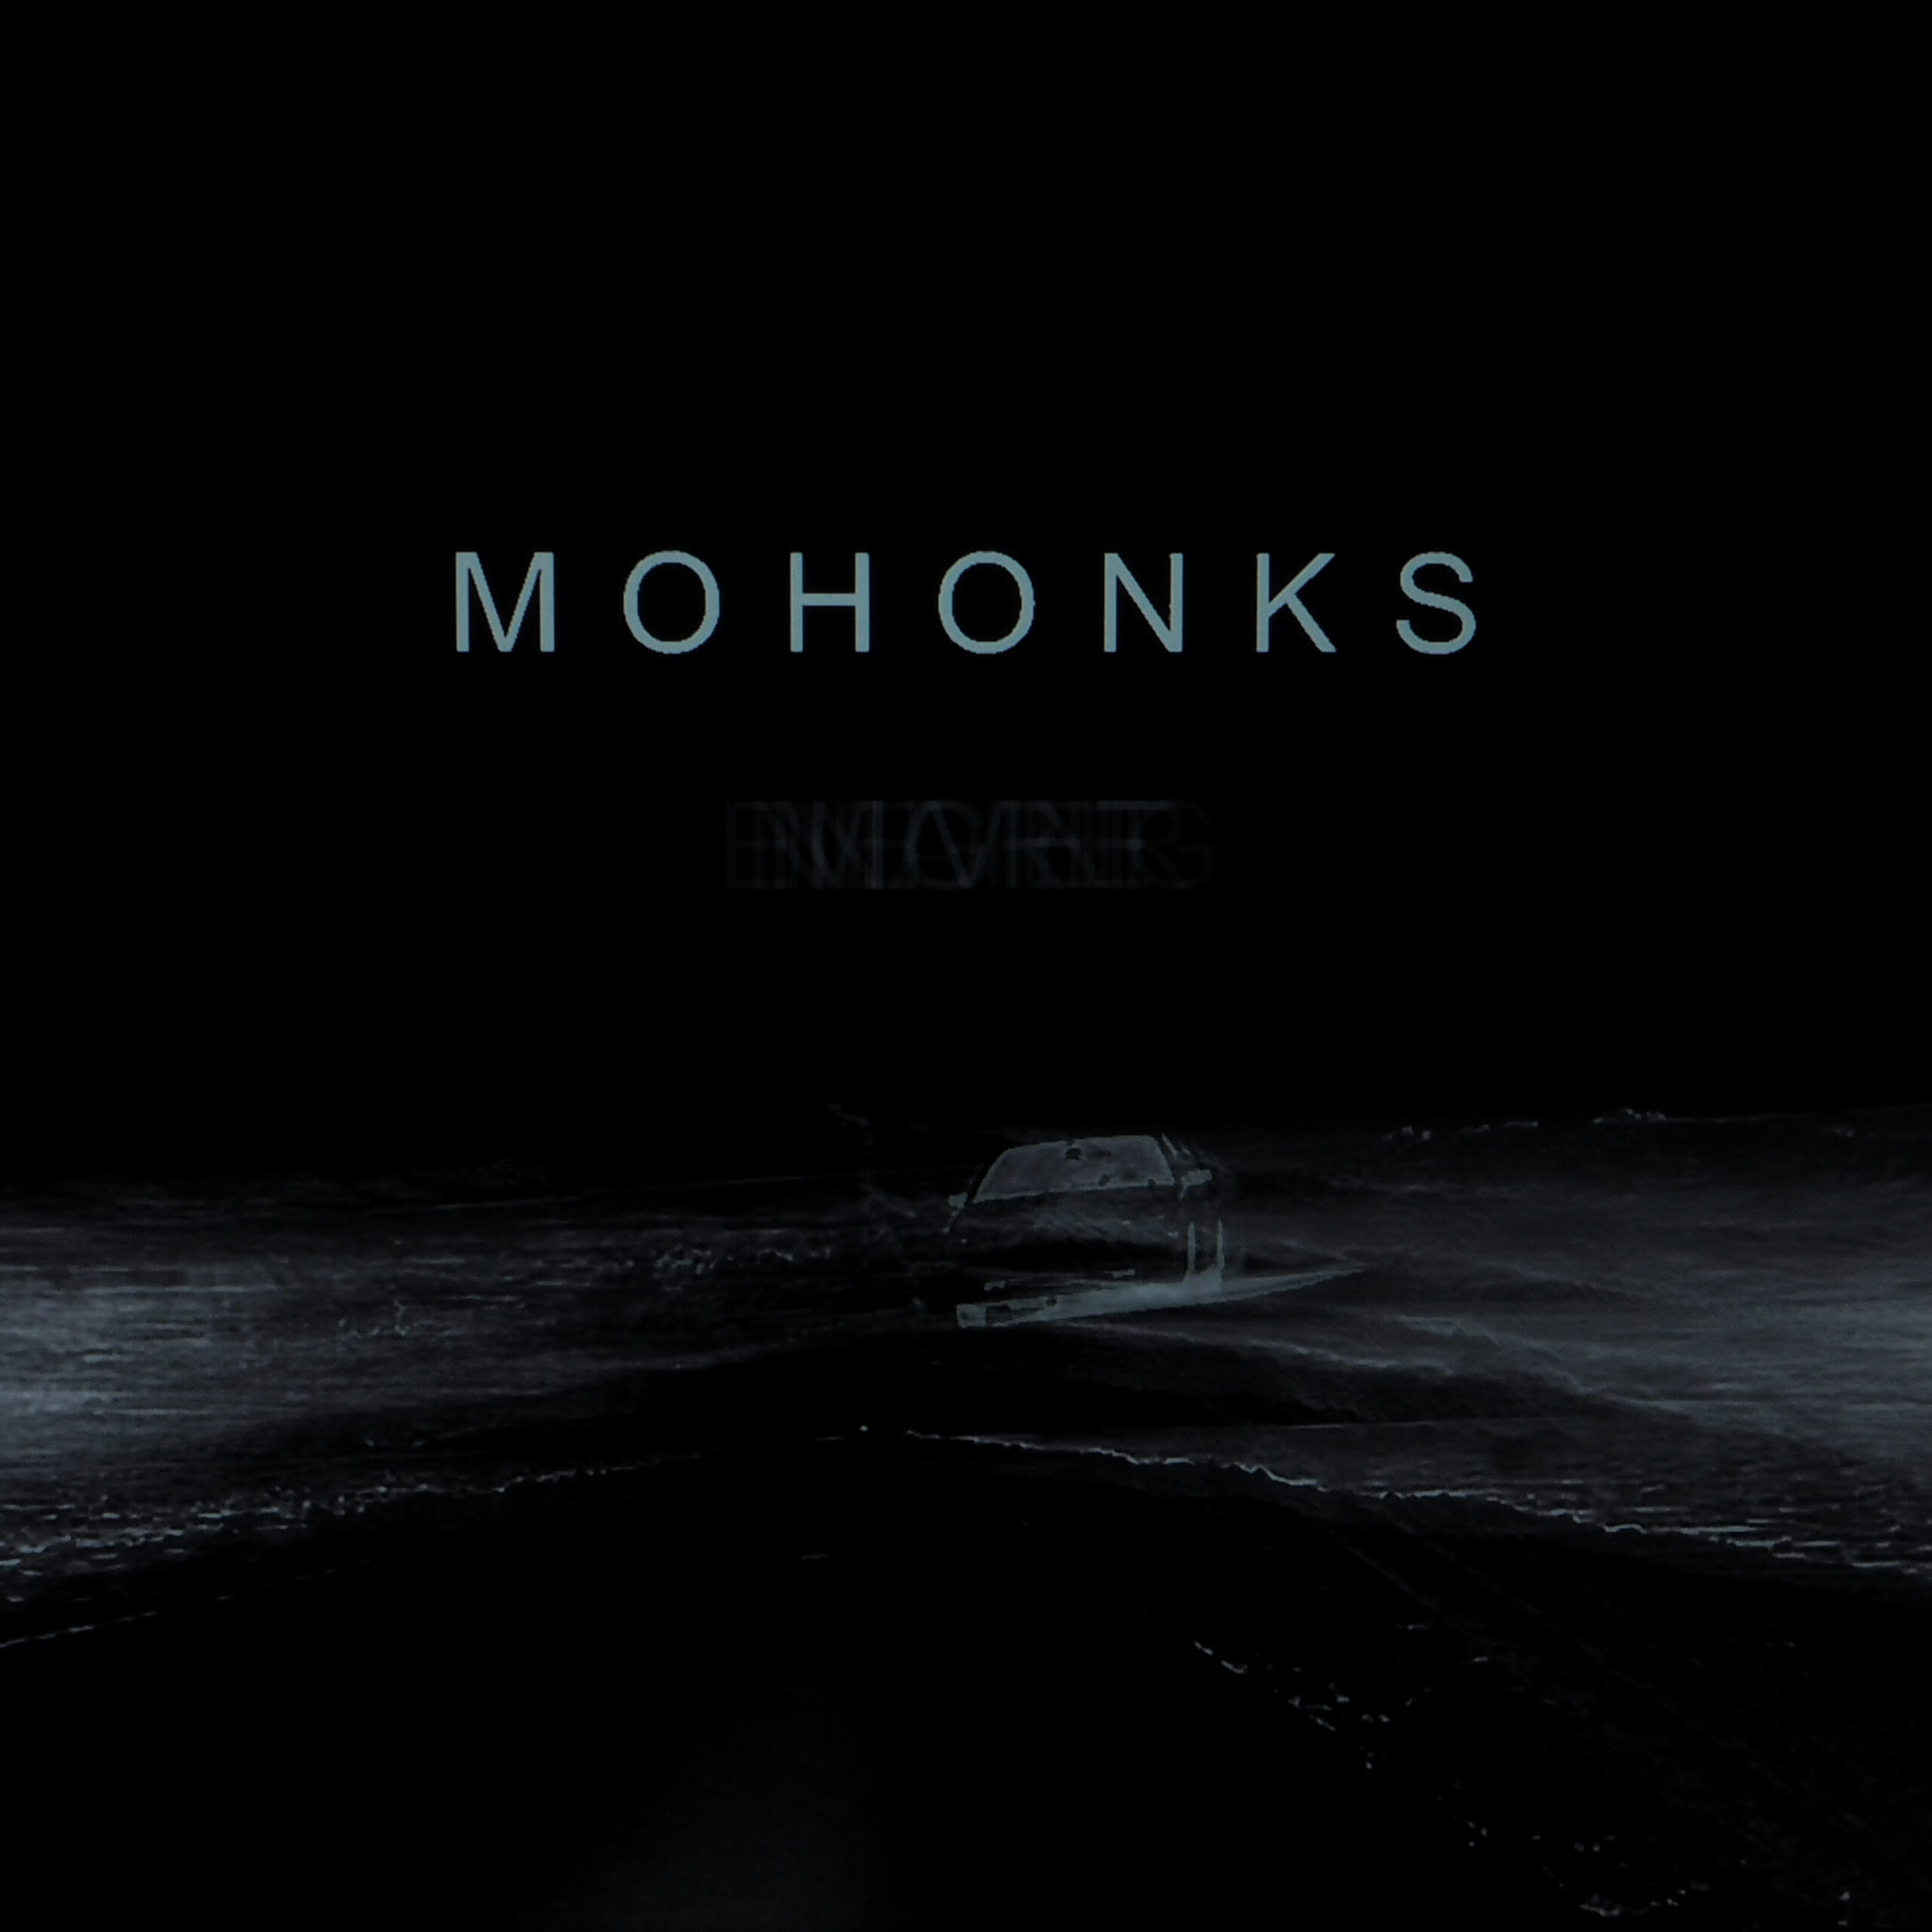 Mohonks veröffentlichen Debütalbum